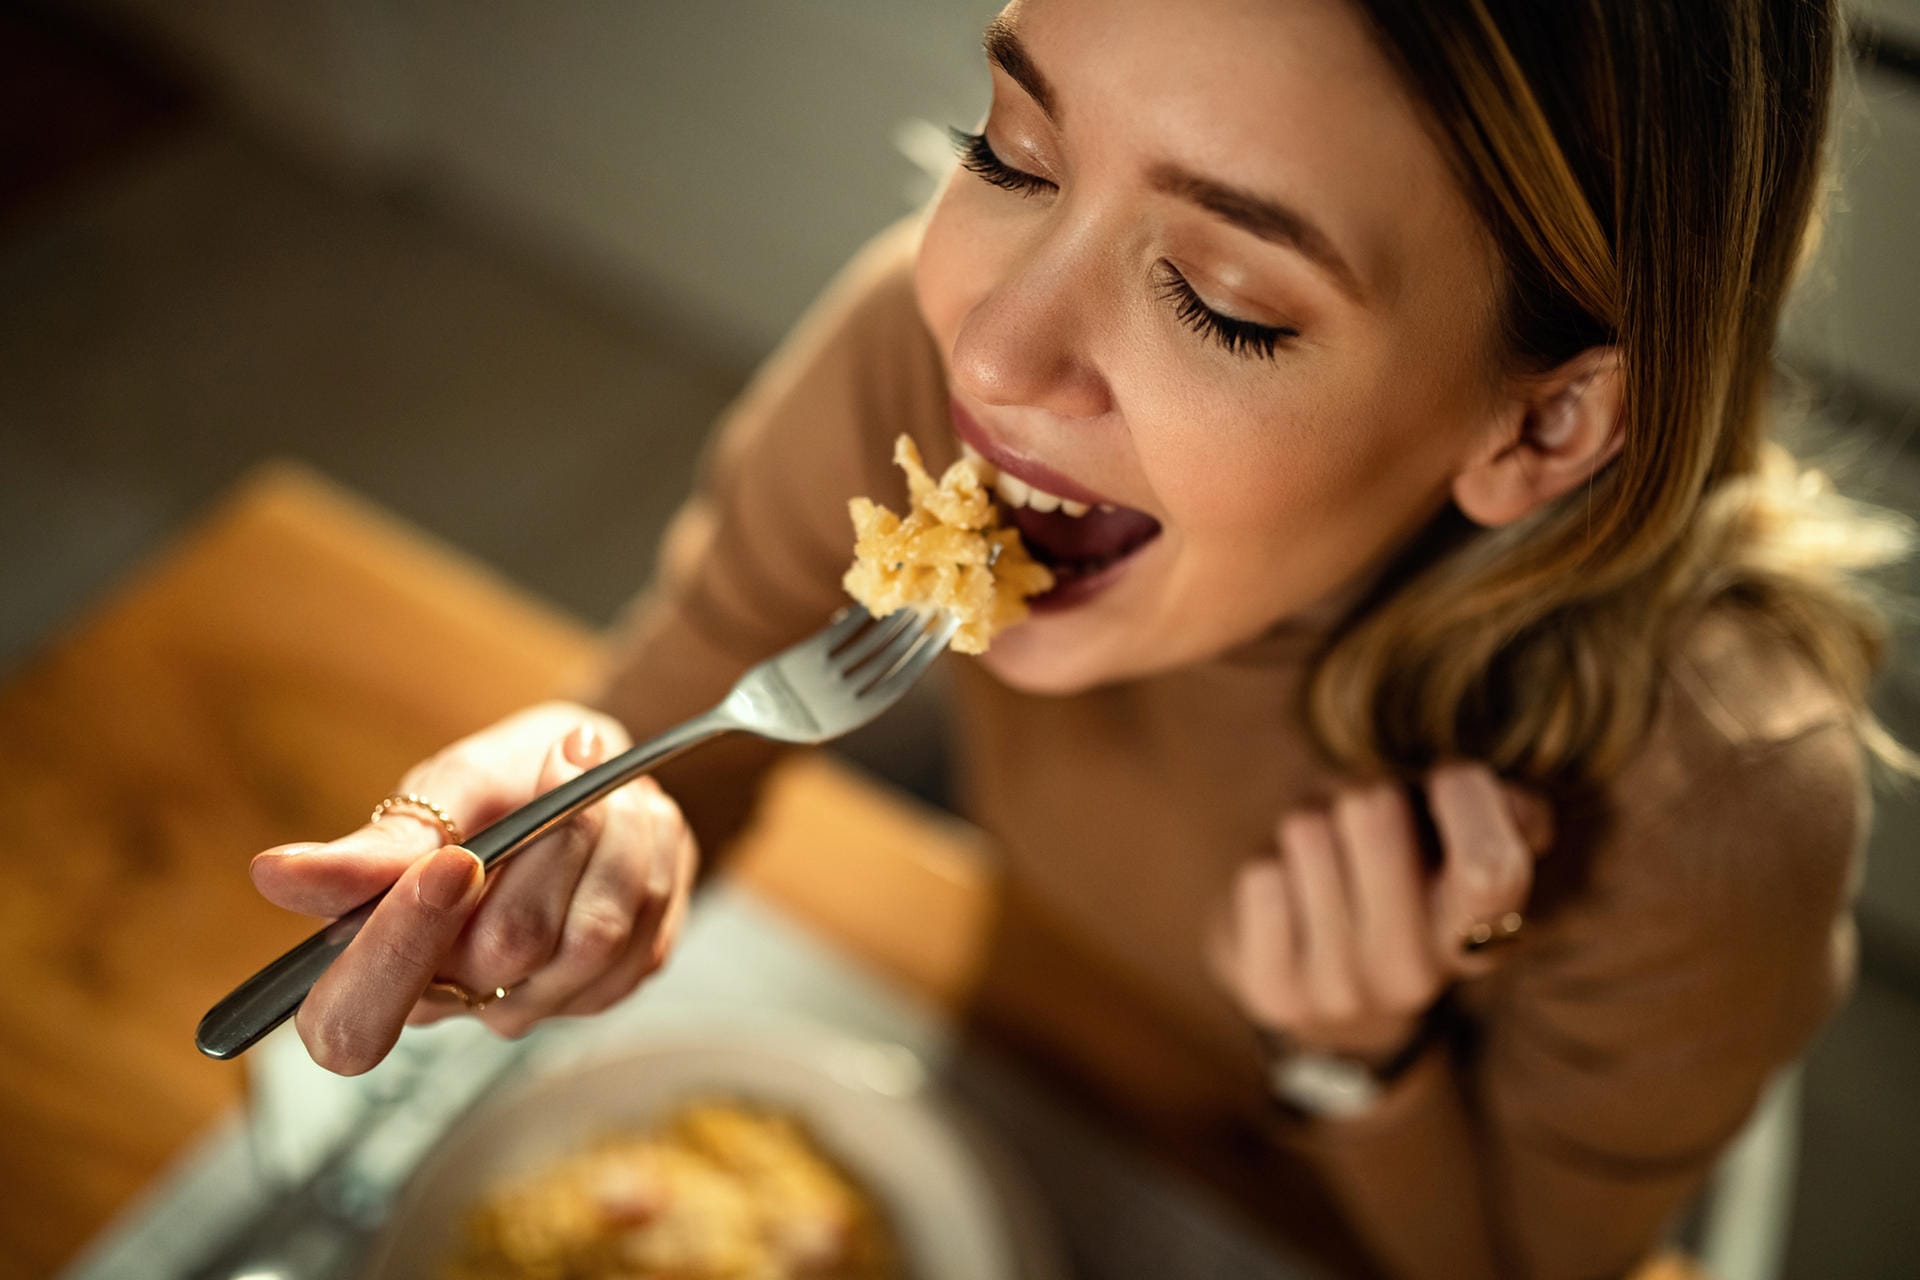 Langsam und in Ruhe essen: Wer schnell zwischen zwei Terminen Fastfood hinunter schlingt, tut seiner Gesundheit keinen Gefallen. Magen und Darmprobleme können die Folge sein. Nehmen Sie sich Zeit für gesundes Essen.